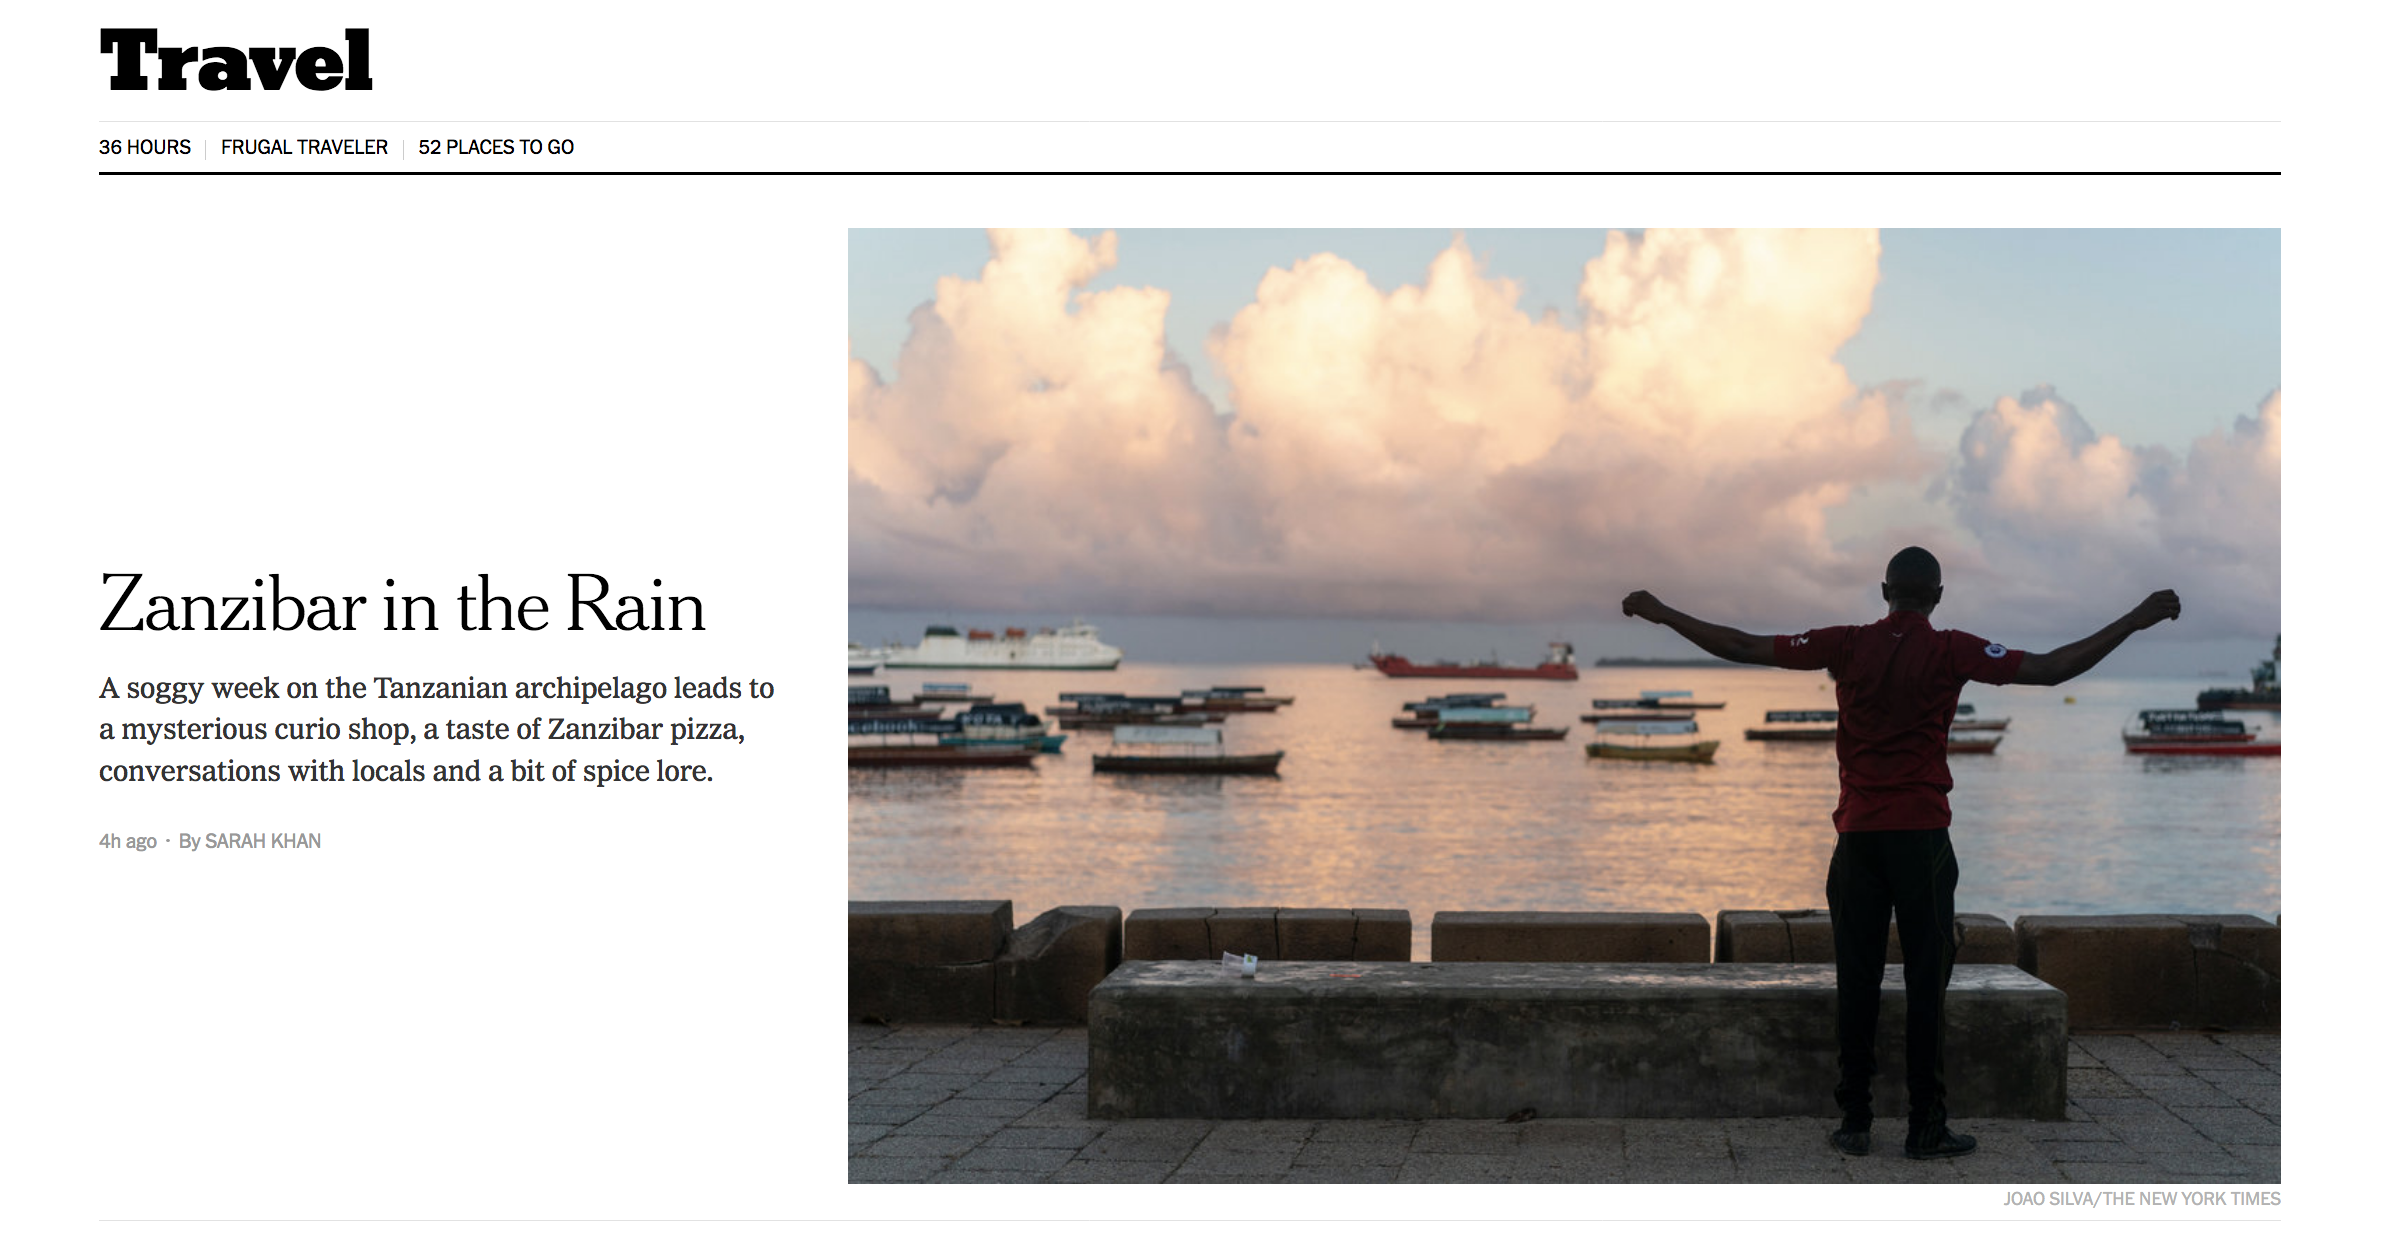 New York Times: Zanzibar in the Rain